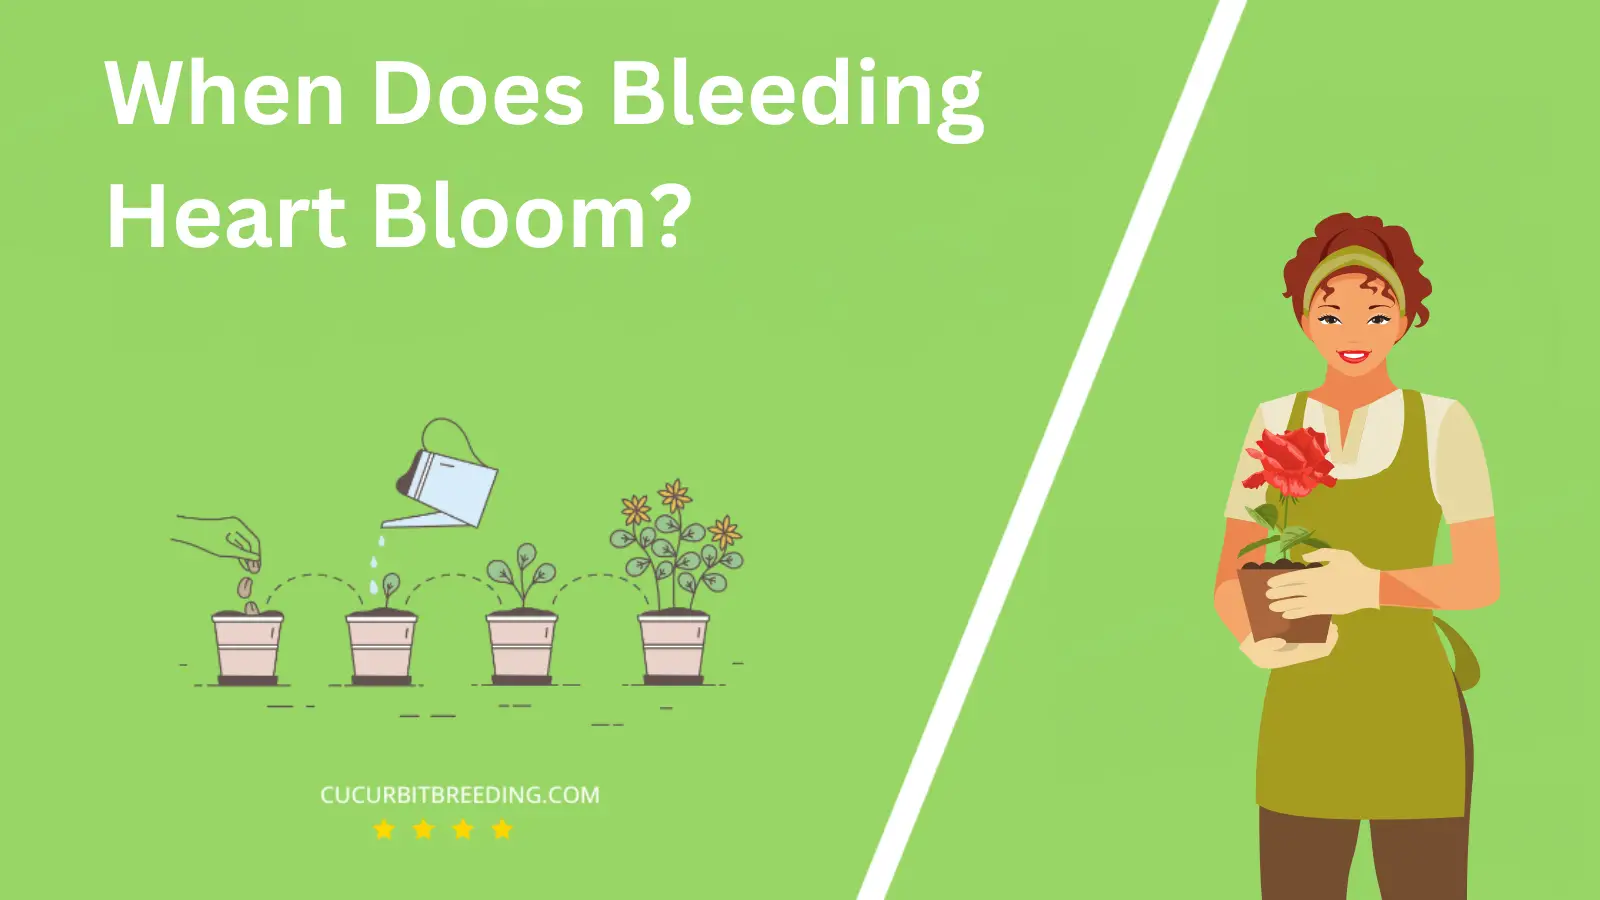 When Does Bleeding Heart Bloom?